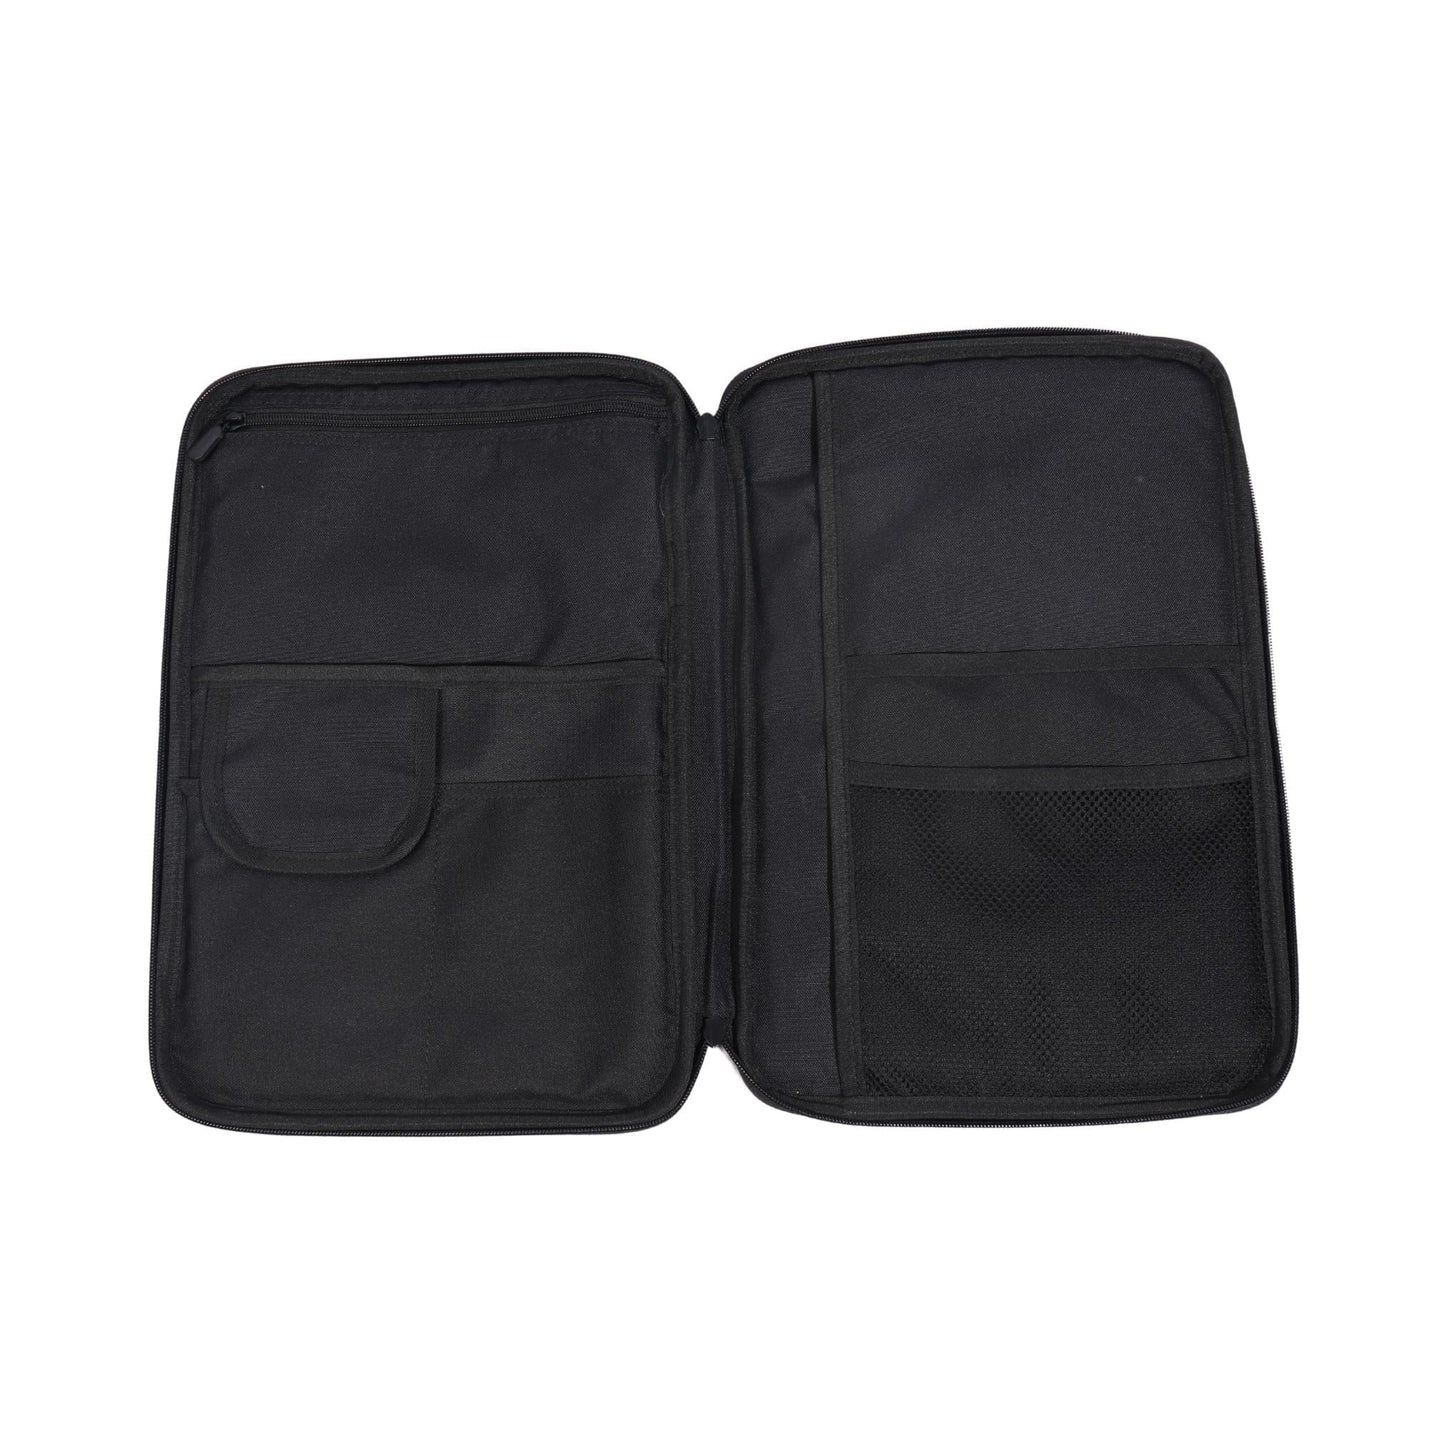 LE COMMERCE Laptops & Accessories Grey LE COMMERCE - Multi-Functional Bag